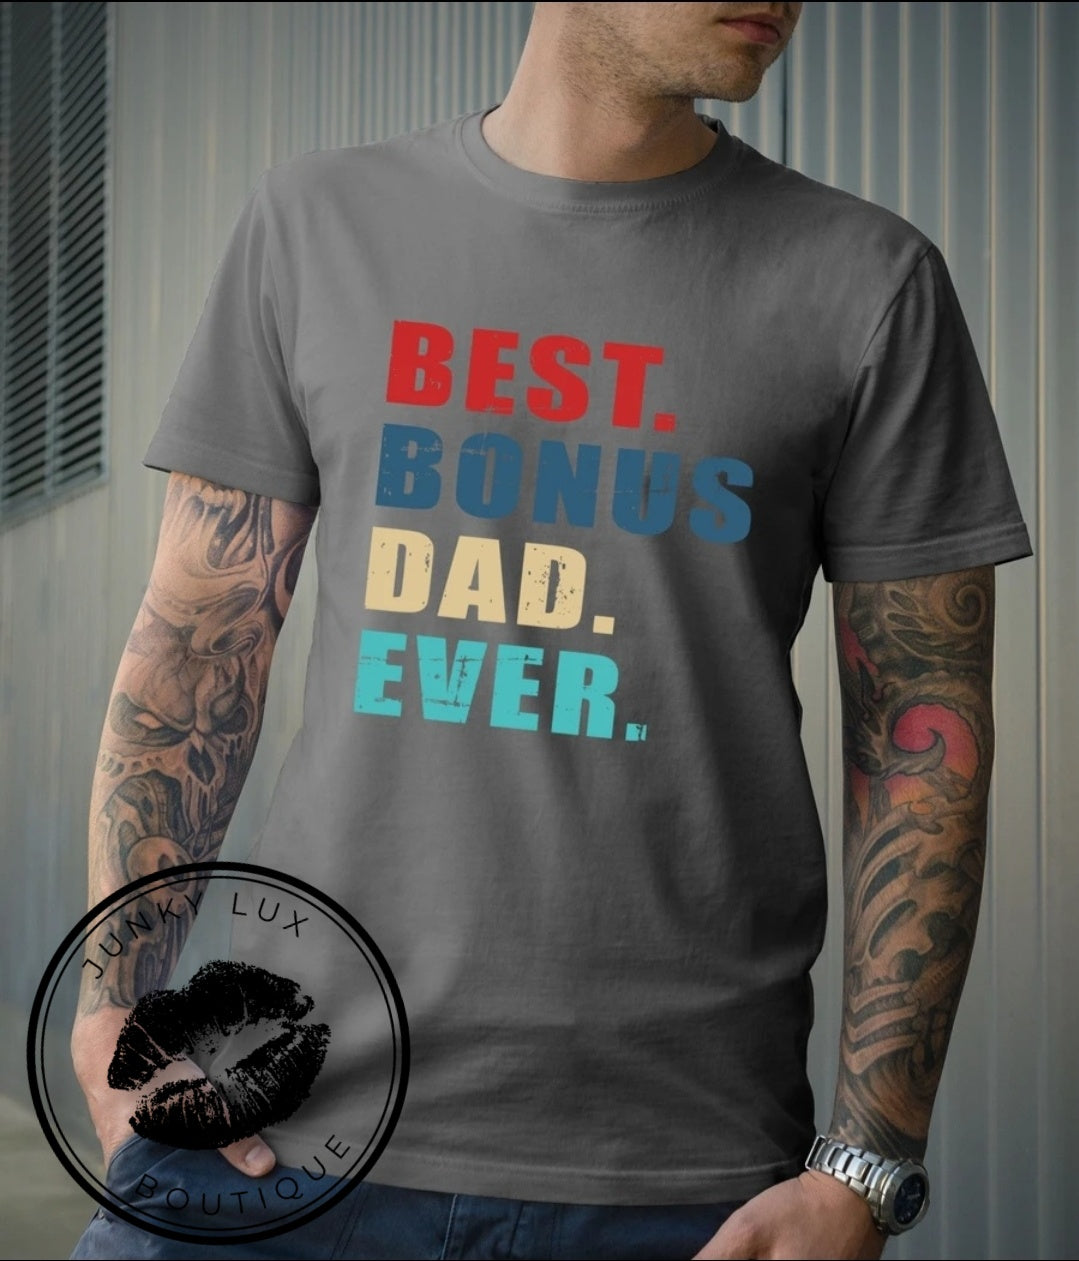 Best. Bonus. Dad. Ever